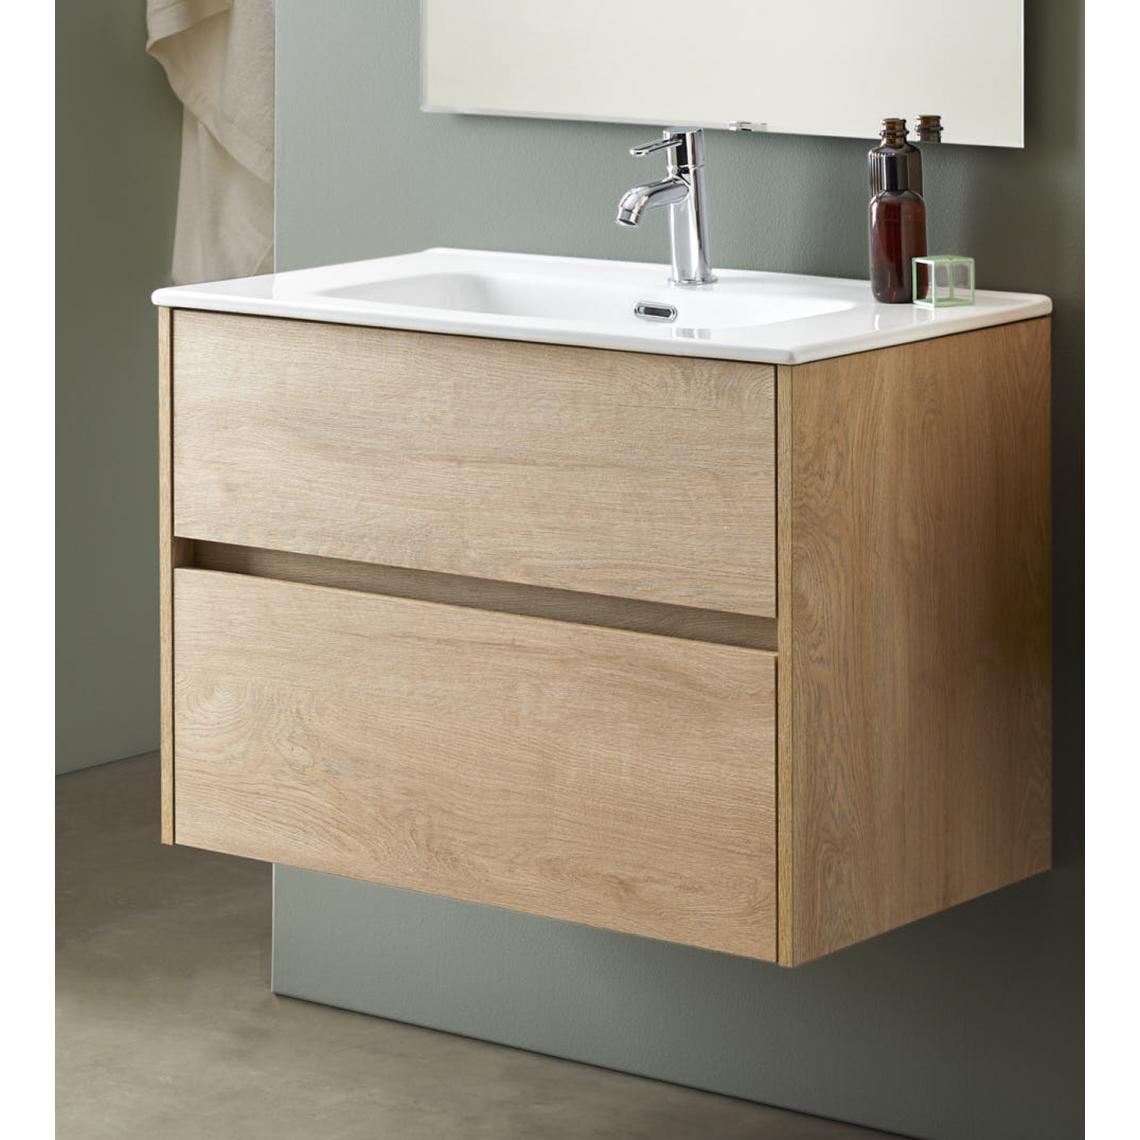 Pegane - Meuble de salle de bain avec 2 tiroirs suspendus chêne Nordique avec plan moulé - Longueur 100 x Hauteur 56 x Profondeur 46 cm - meuble bas salle de bain